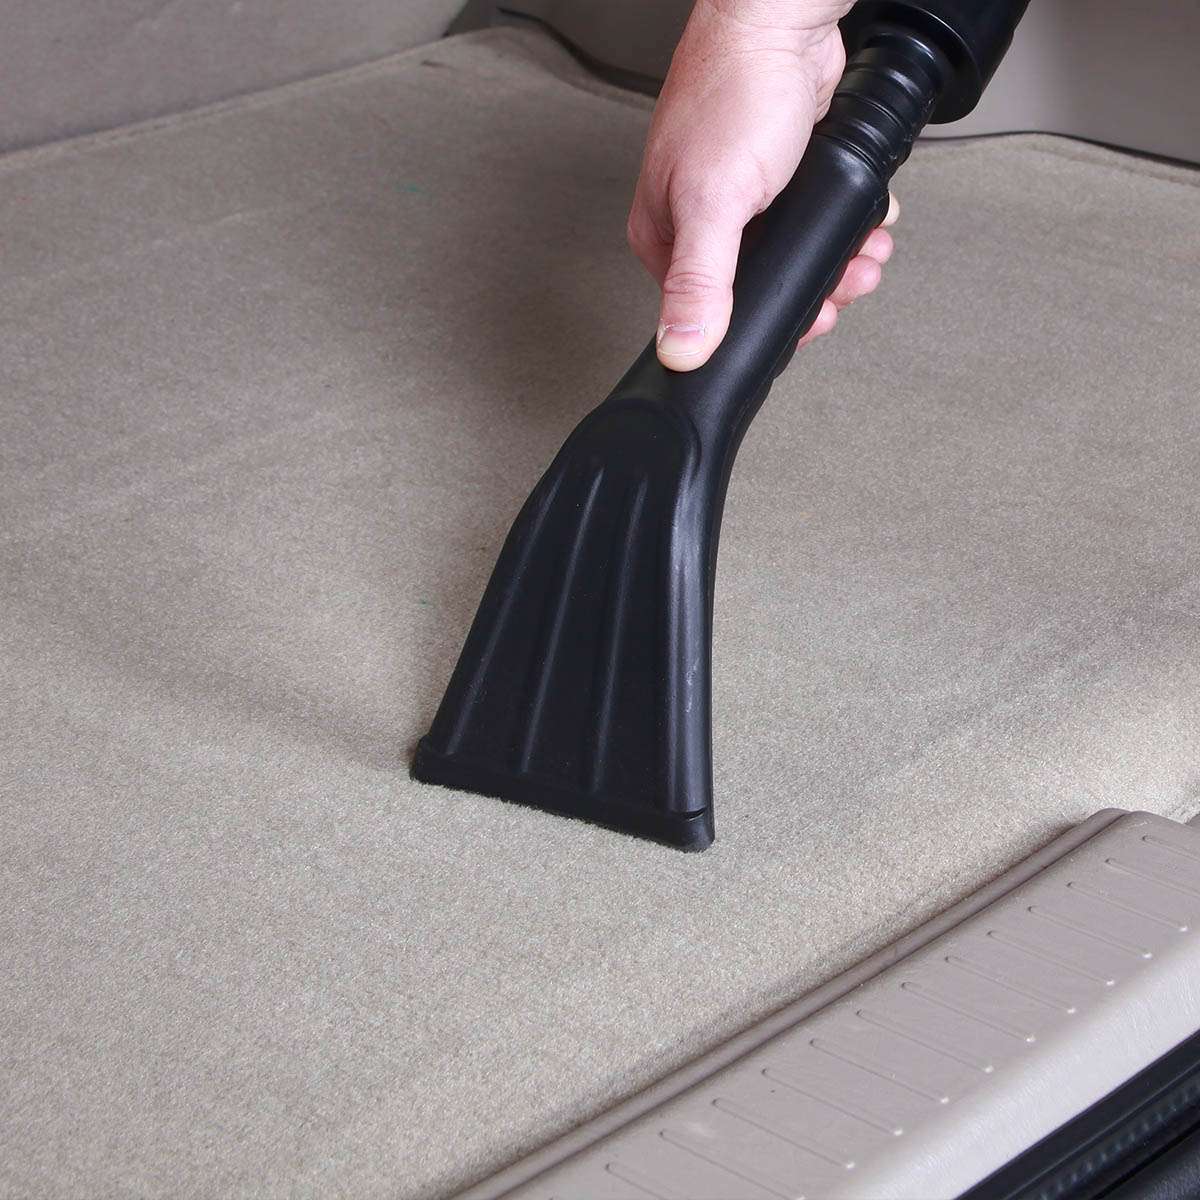 How To Dry A Wet Car Carpet